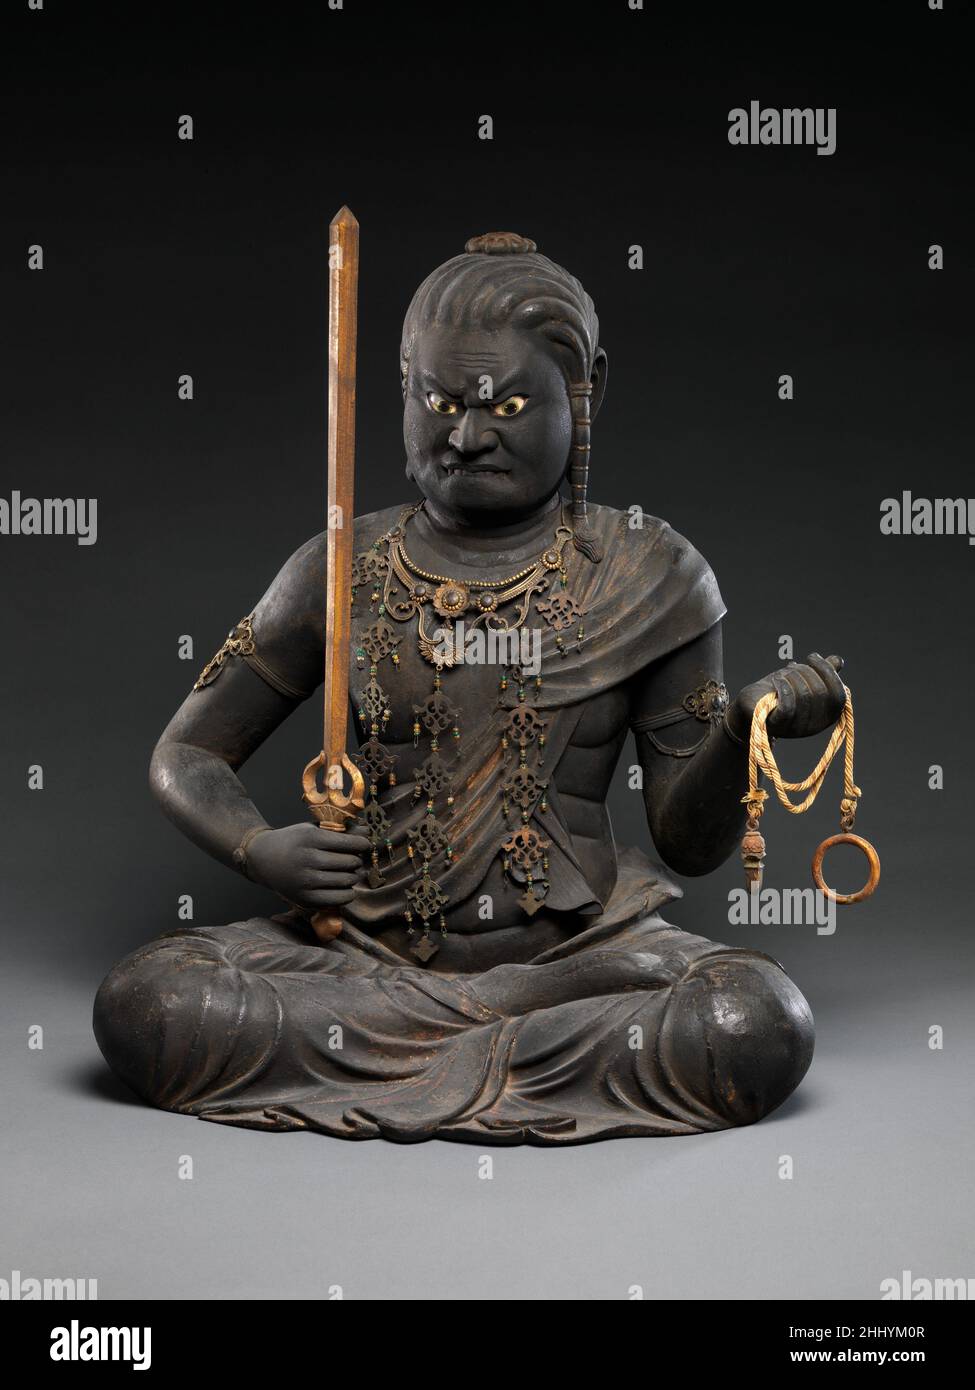 Fudō Myōō (Achala Vidyaraja), il re della saggezza immobile Kaikei Fudō Myōō, all'inizio del 13th secolo, è adorato come un avatar irreale di Dainichi, il buddha al centro del cosmo buddista. Tenace protettore degli insegnamenti buddisti, Fudō è armato di un lazo e di una spada per sottomudere le forze negative. In linea con le descrizioni scritturali, questo esempio, creato nel laboratorio del principale scultore Kaikei, ritrae una figura corposa e minacciosa che mordicava il labbro inferiore, con i capelli legati e cadendo sulla spalla sinistra. Fudō Myōō (Achala Vidyaraja), il re della saggezza immobile 53176 Foto Stock